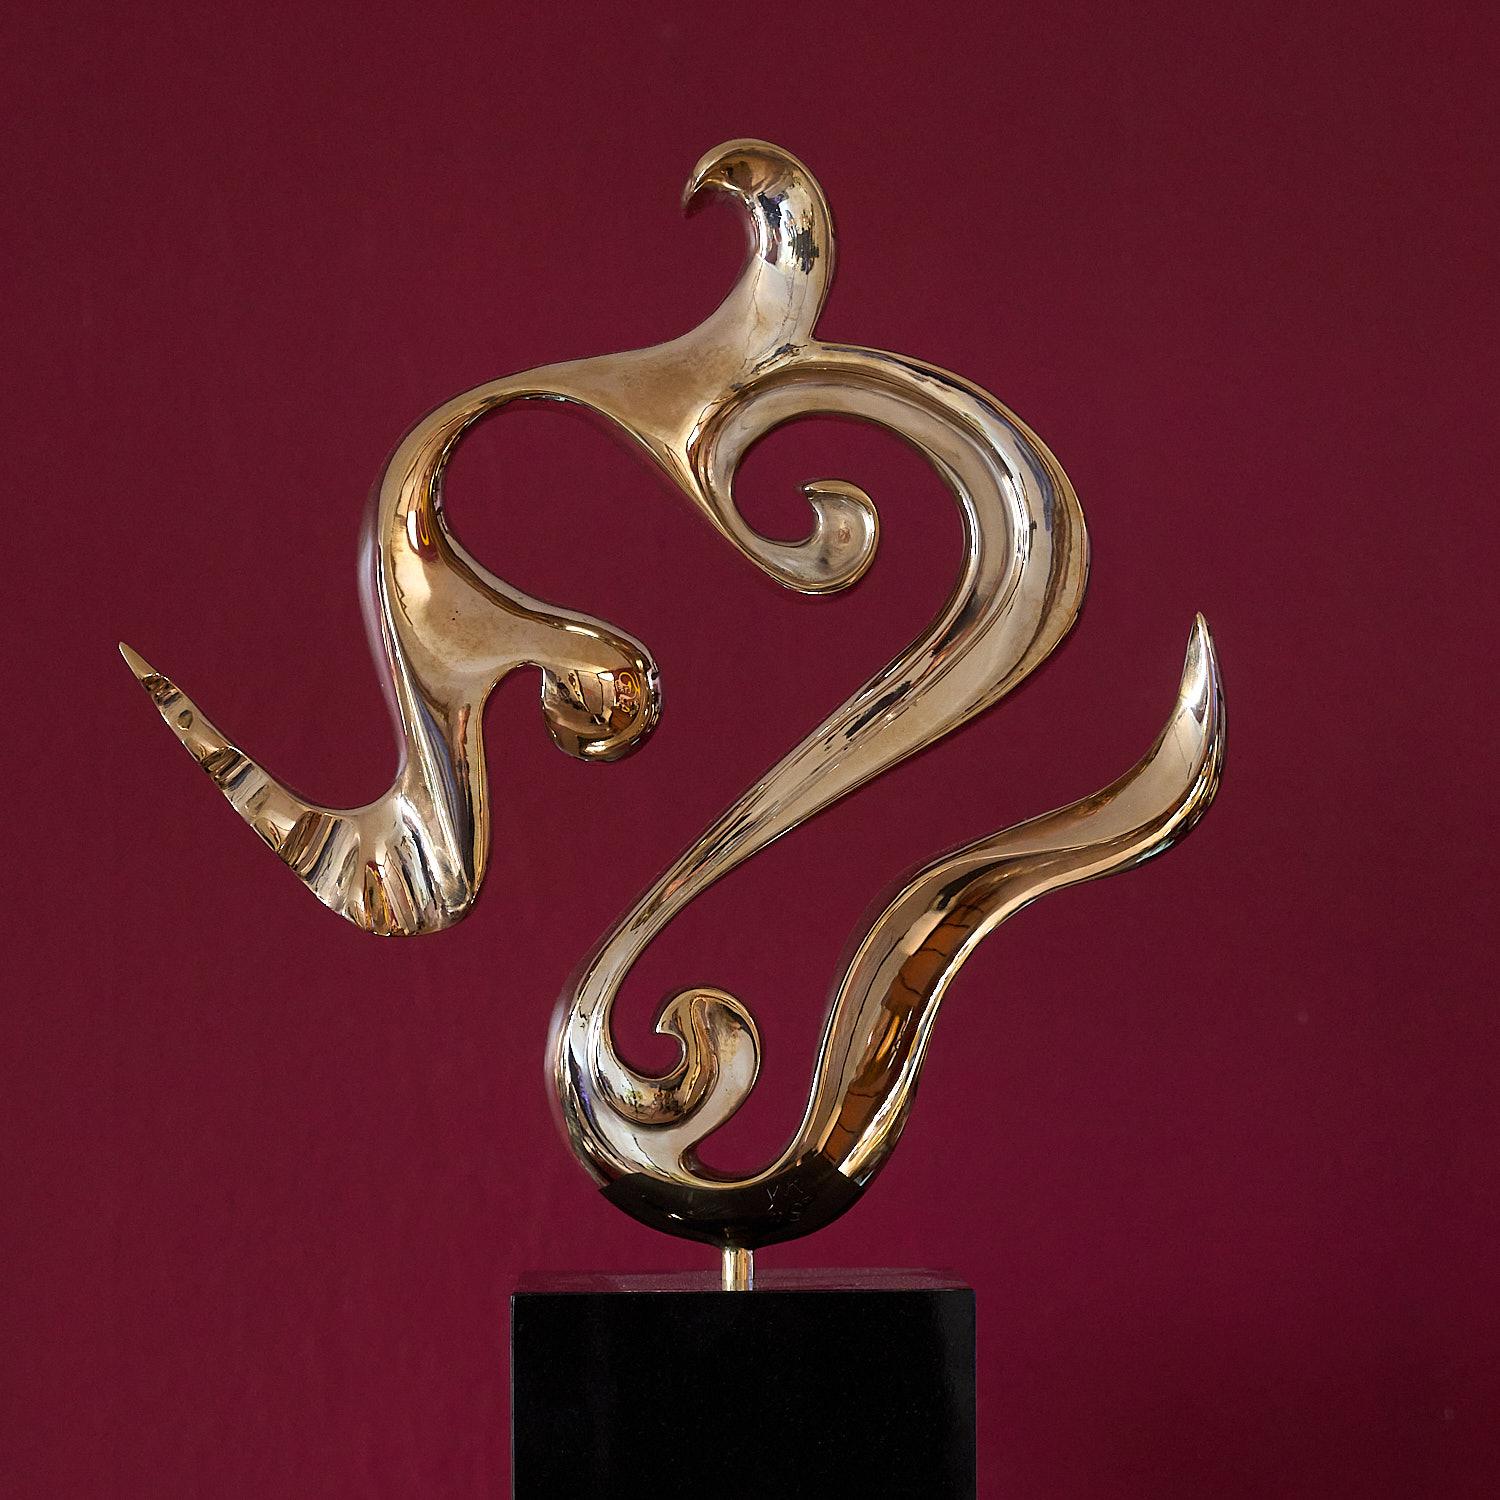  Flow, bronze polished modern contemporary art sculpture 21st century - Sculpture by Jan Willem Krijger